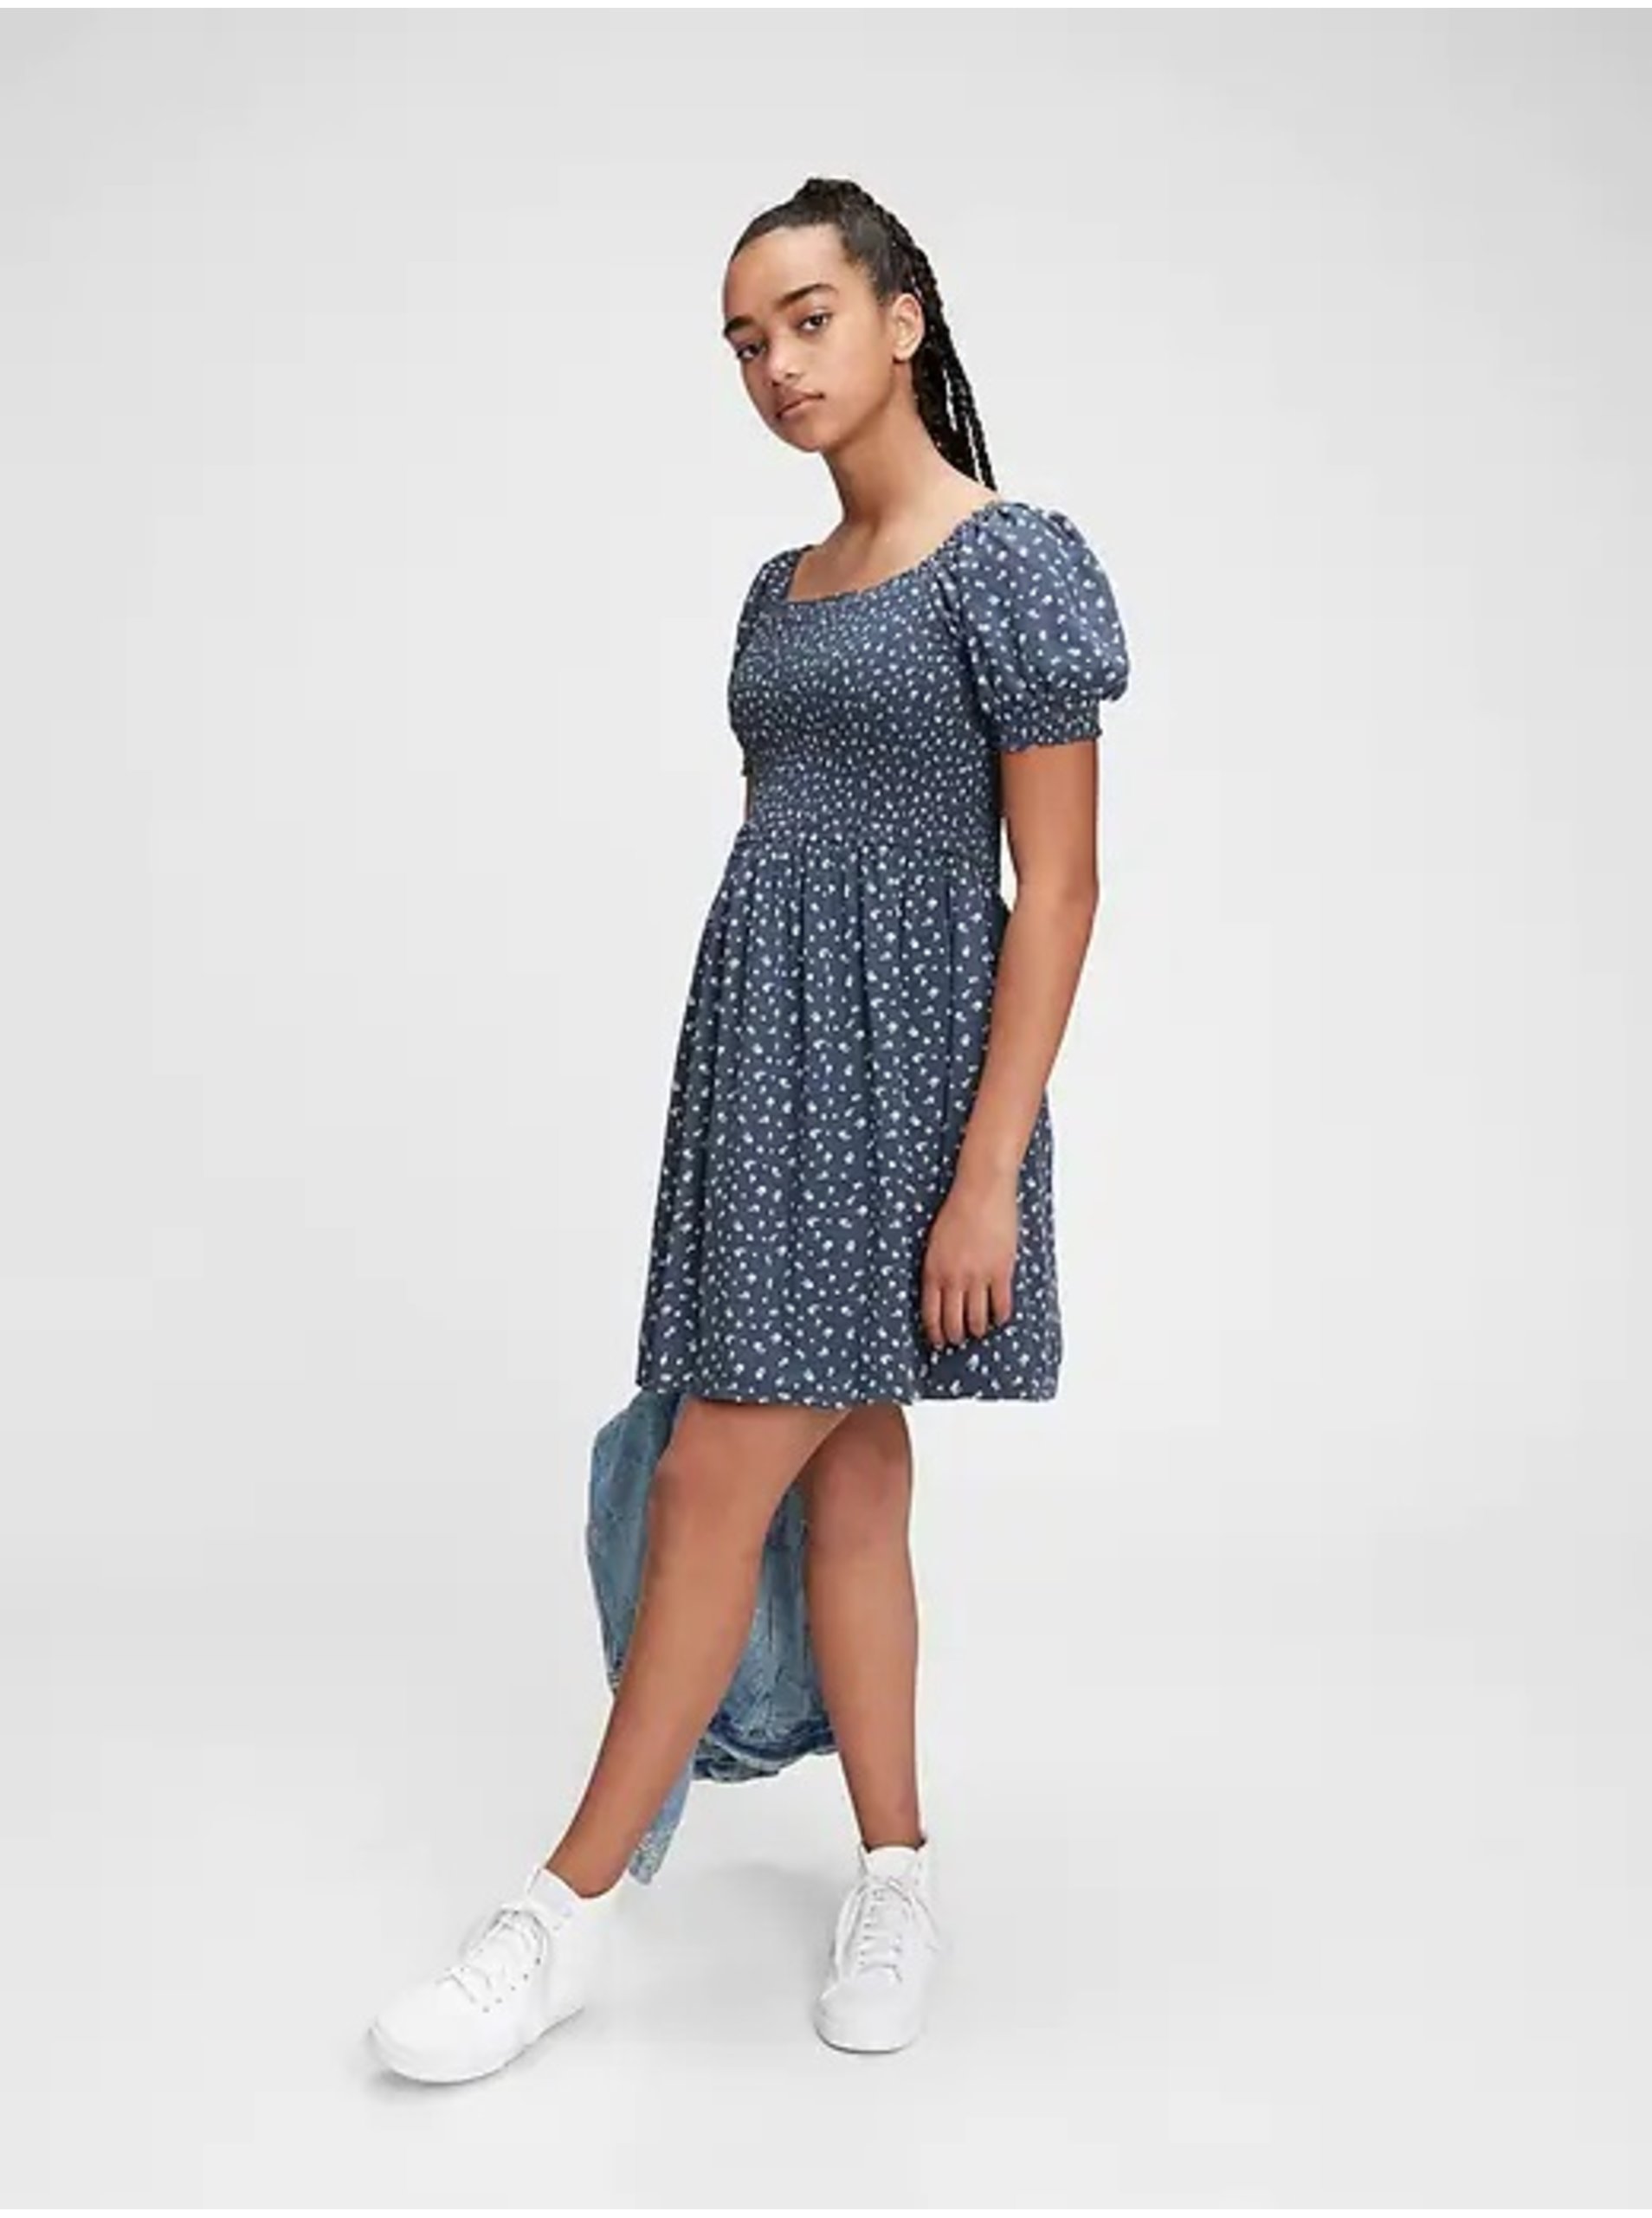 Lacno Modré dievčenské šaty GAP teen floral smocked dress